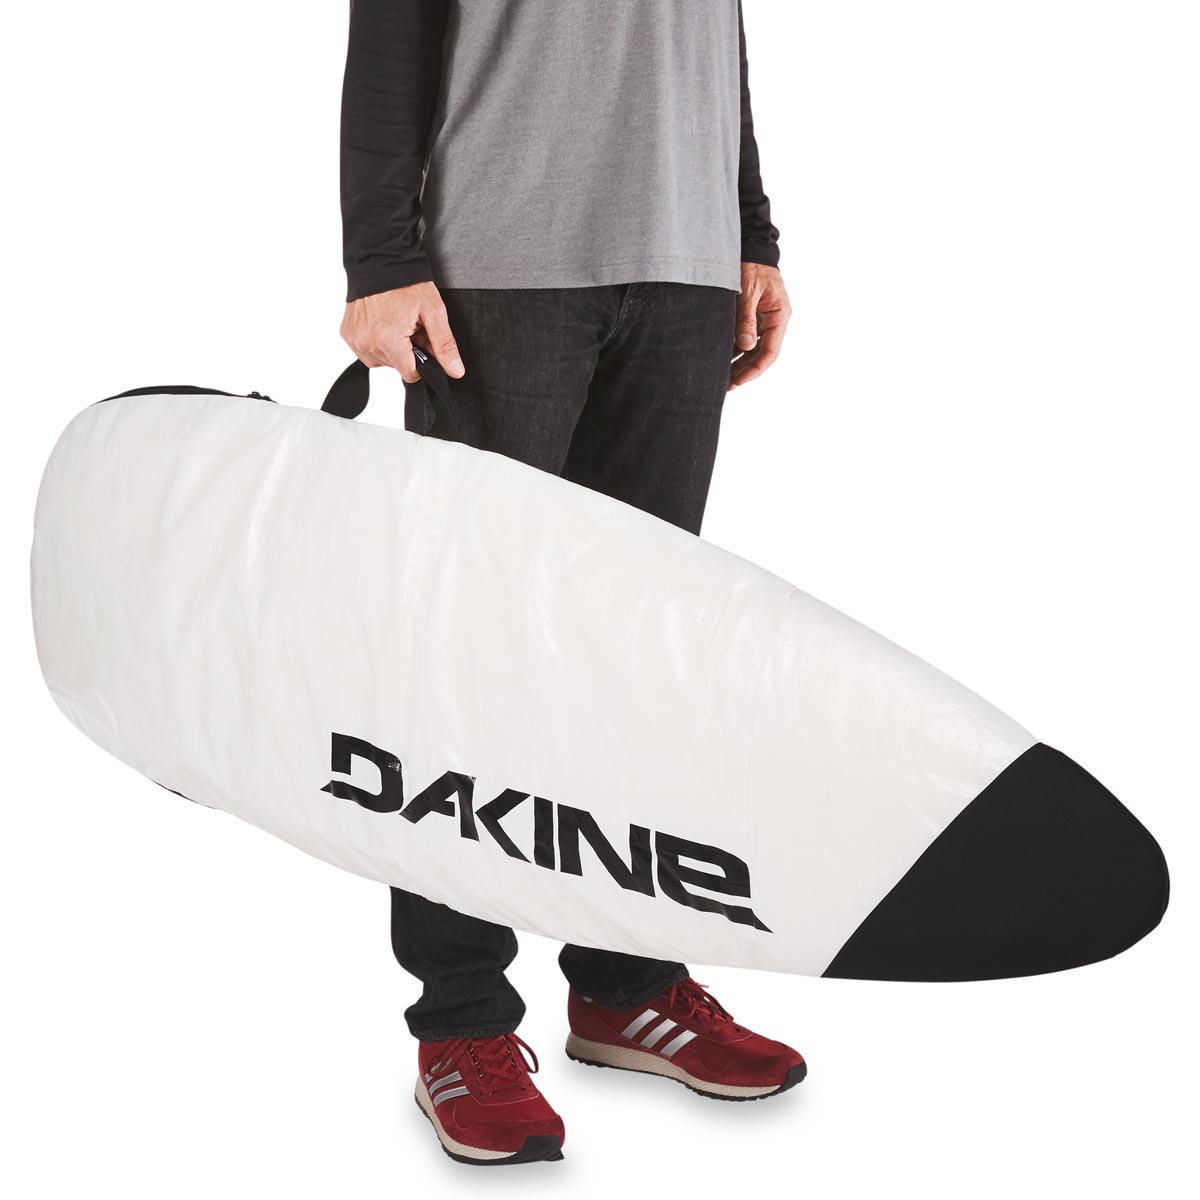 Dakine 6'0 Funda - Shuttle Bag Thruster - White